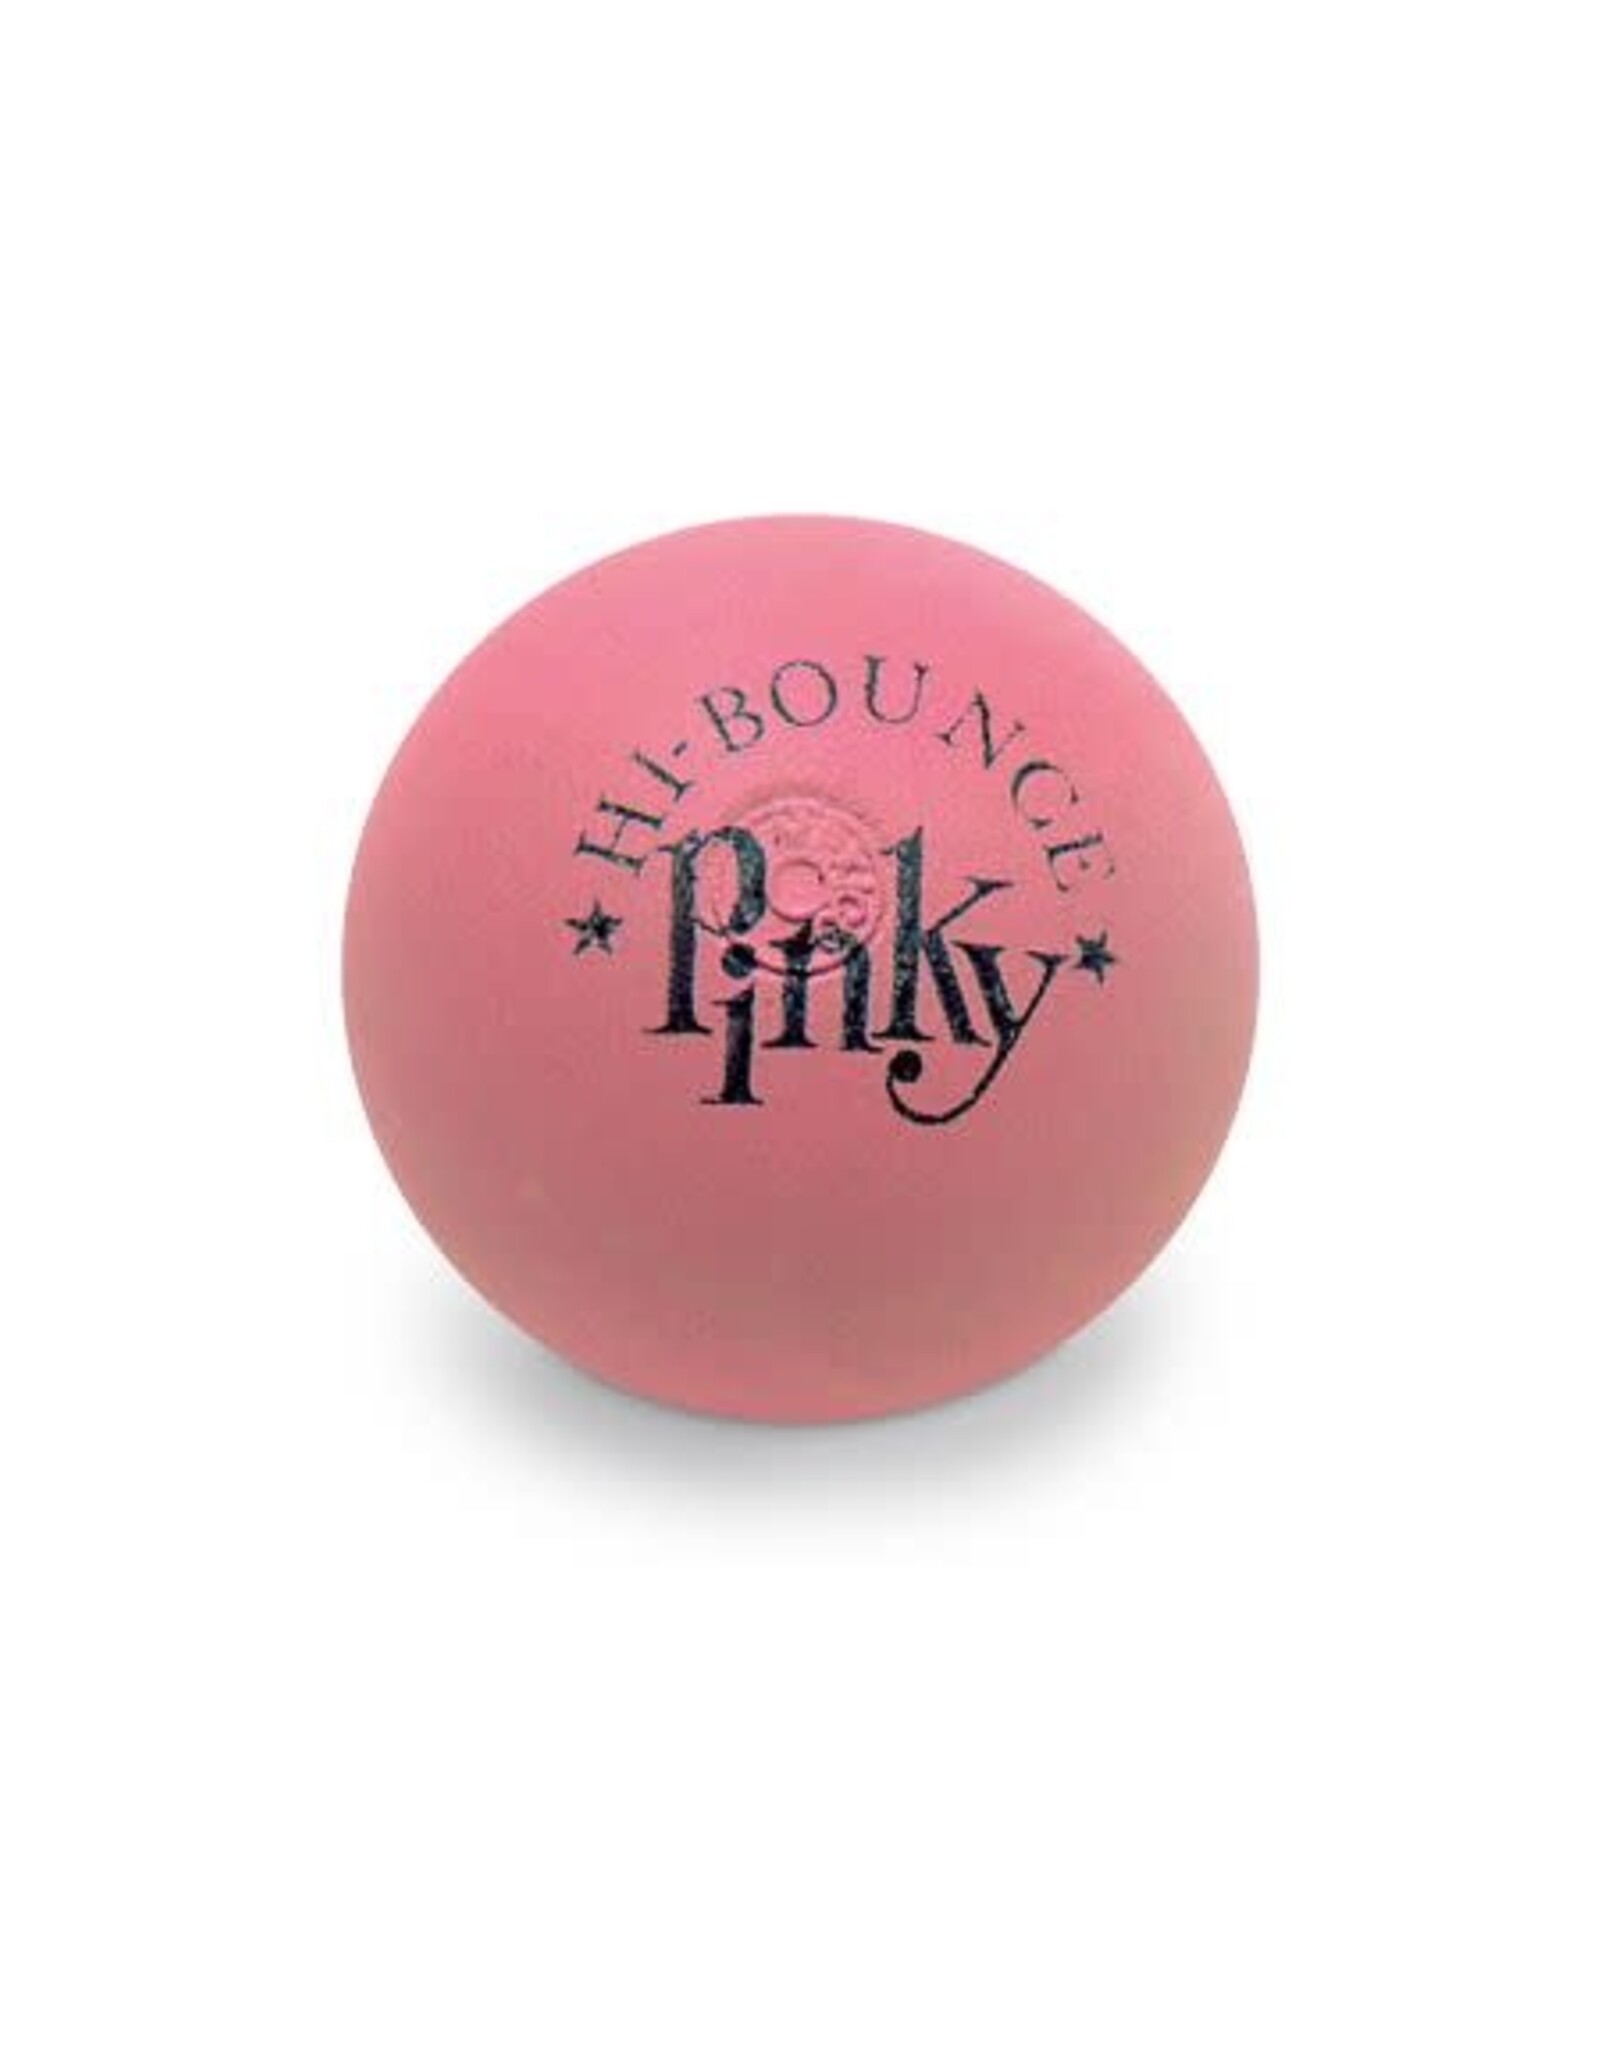 Toysmith Pinky Ball